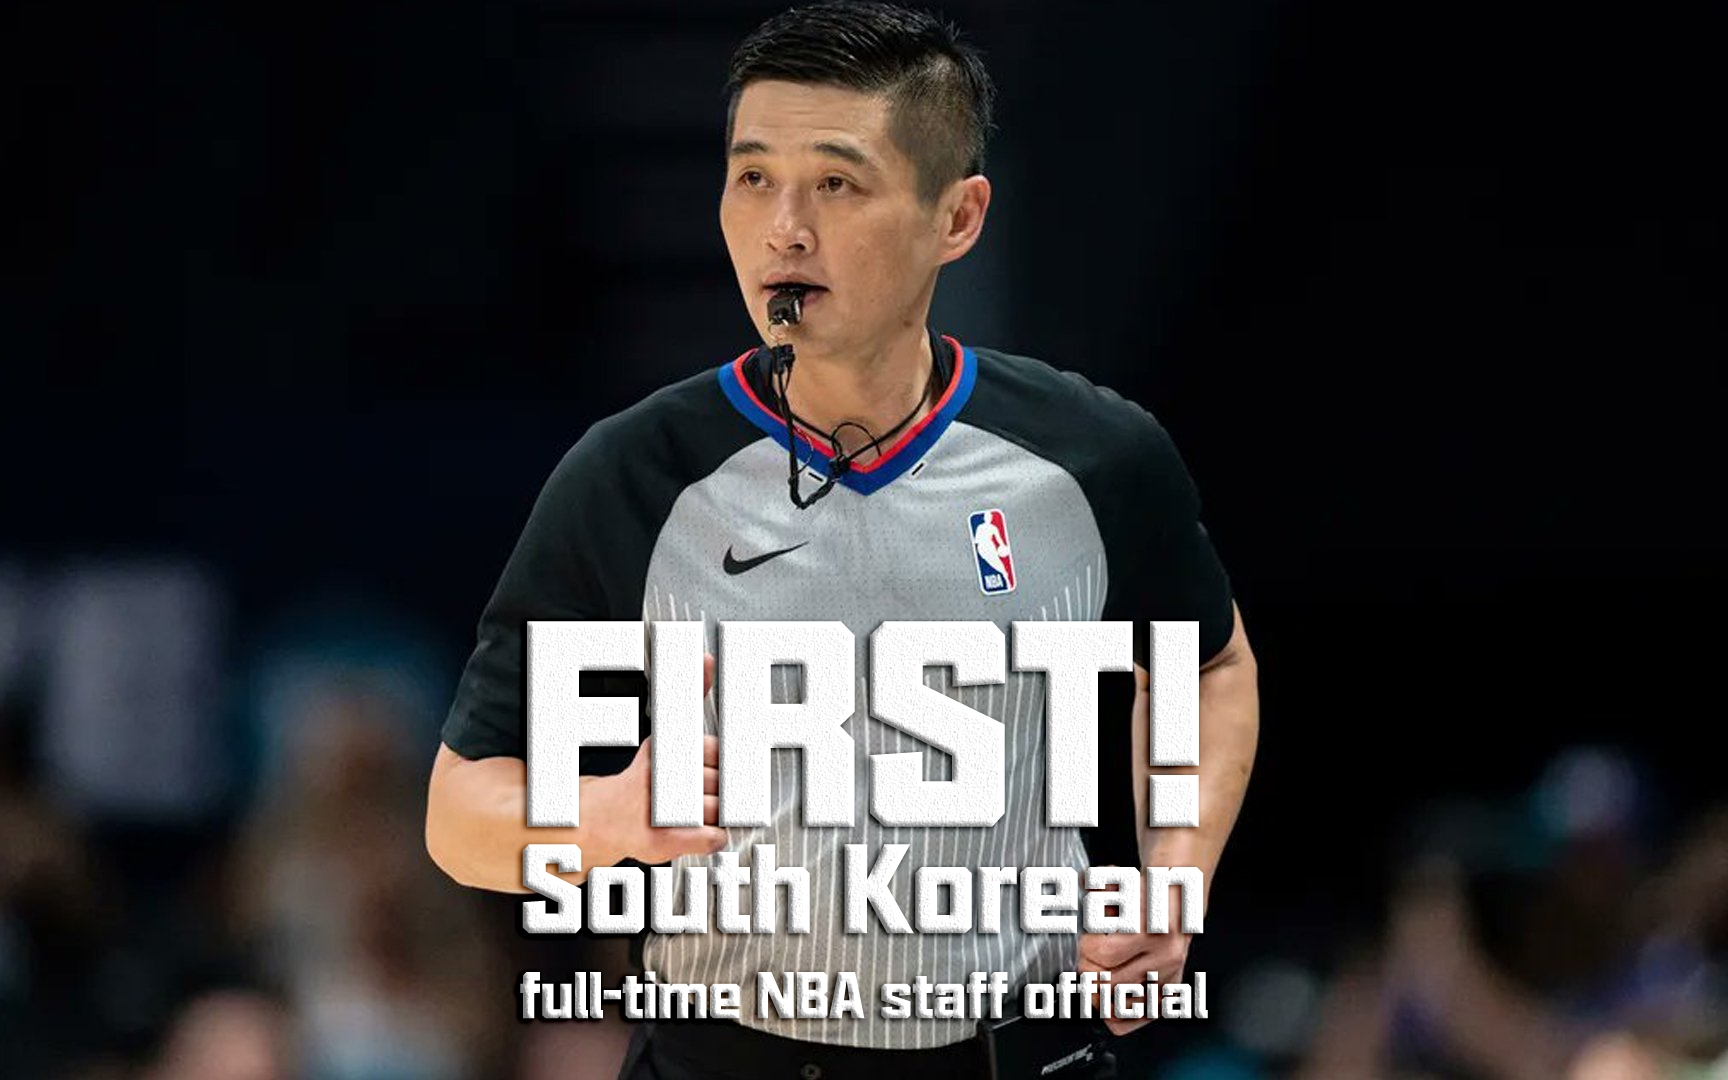 黄仁泰晋升至NBA成为历史第一位韩国籍的NBA全职裁判